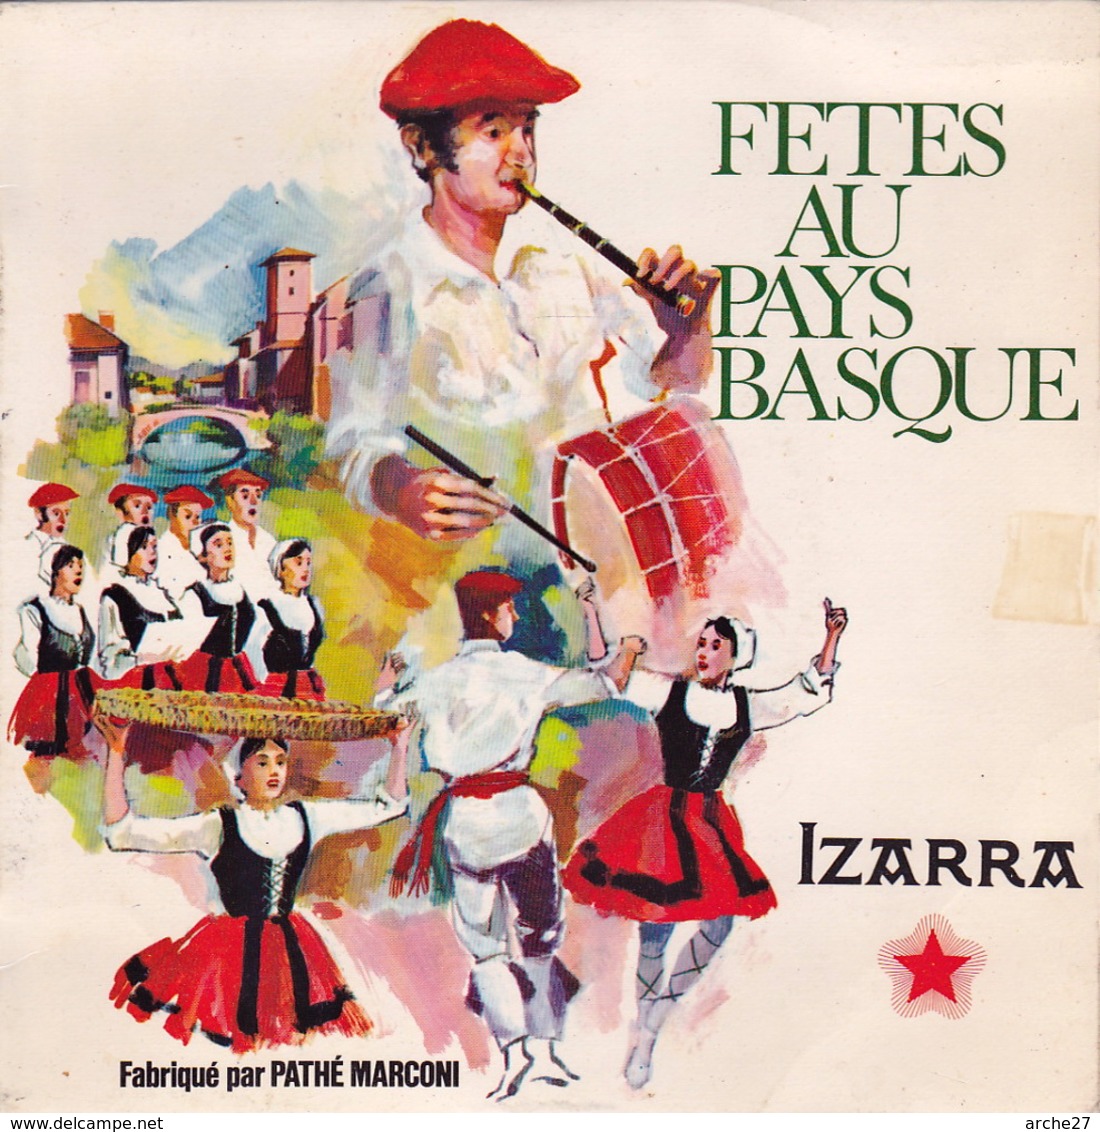 FETES DU PAYS BASQUE - EP - 45T - Disque Vinyle - Izarra - 68041 - Musiques Du Monde